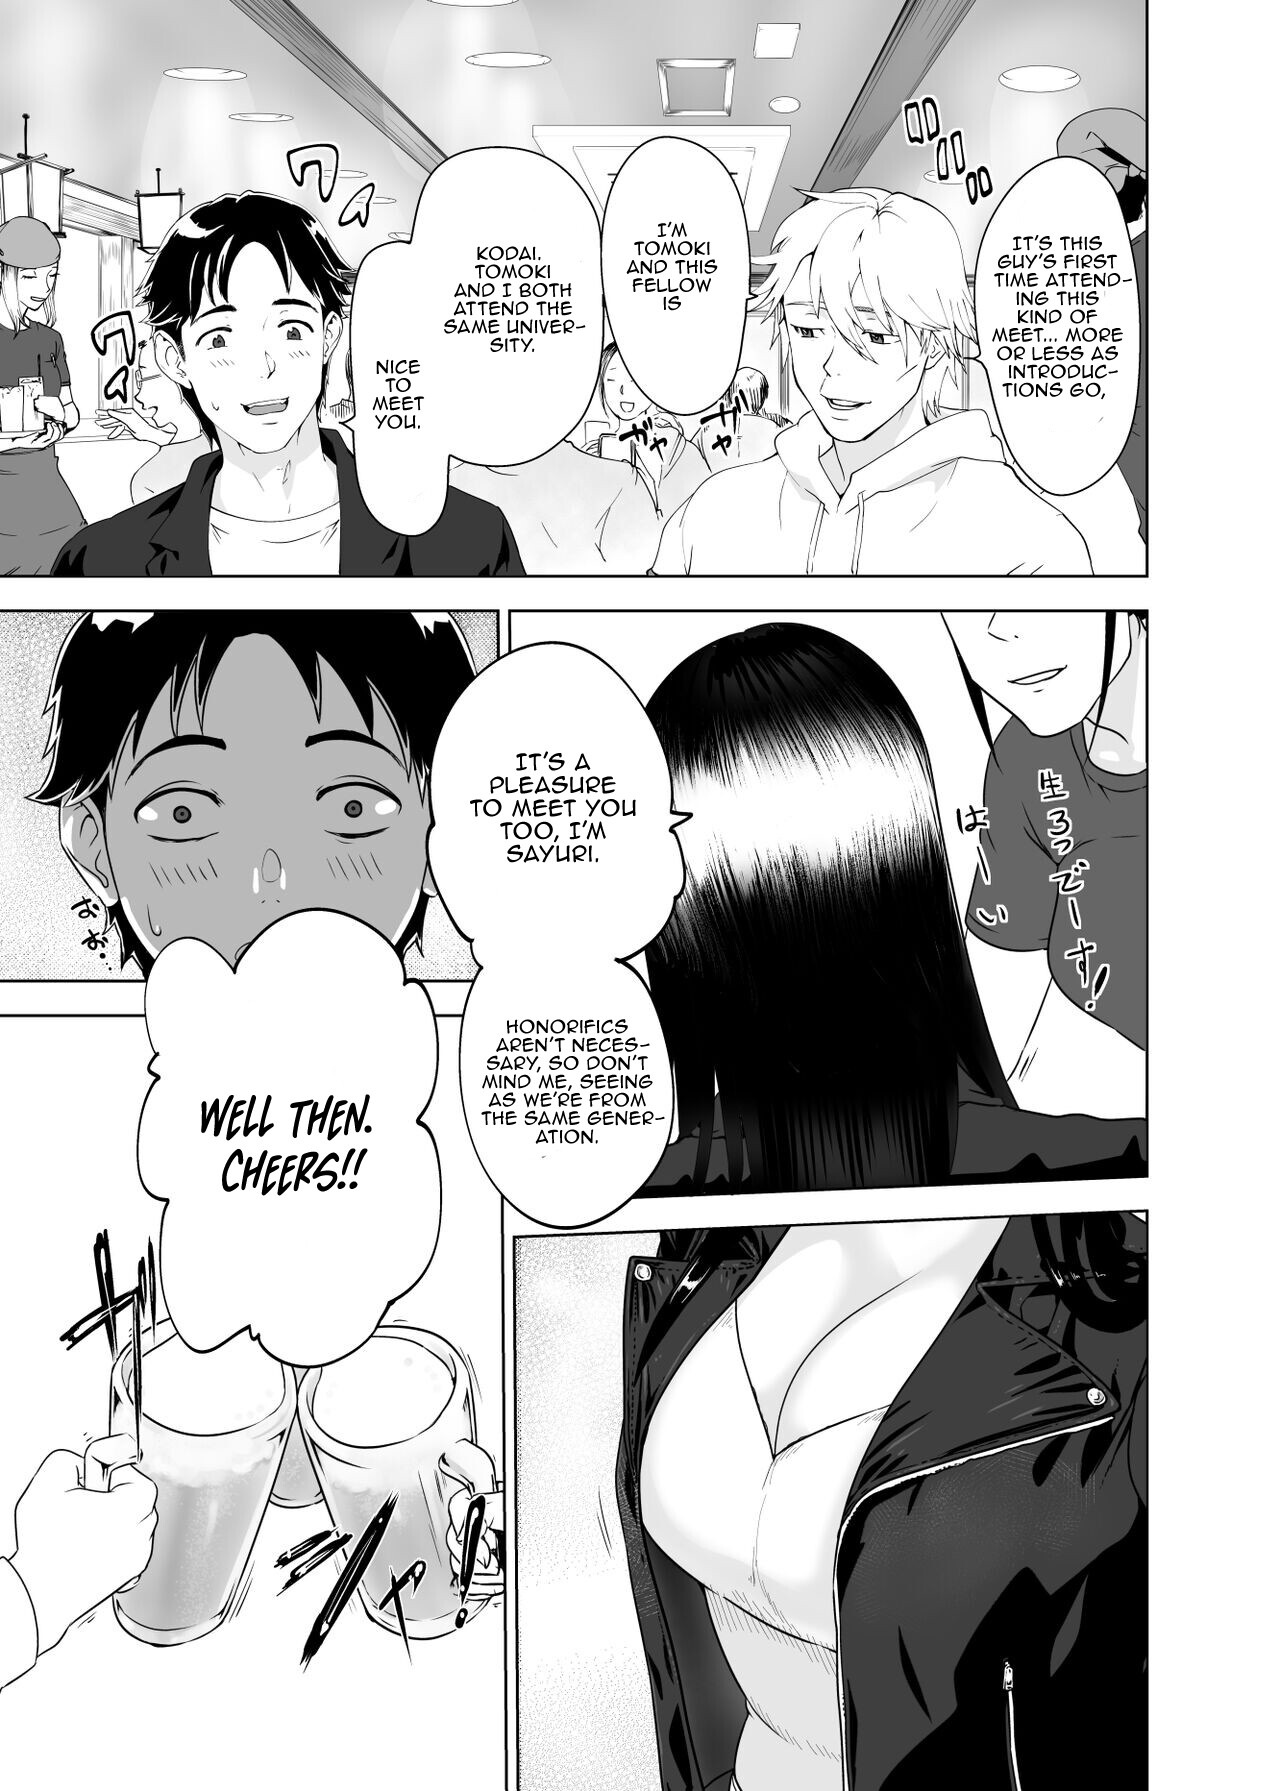 Hentai Manga Comic-A Whore' sFace-Read-3